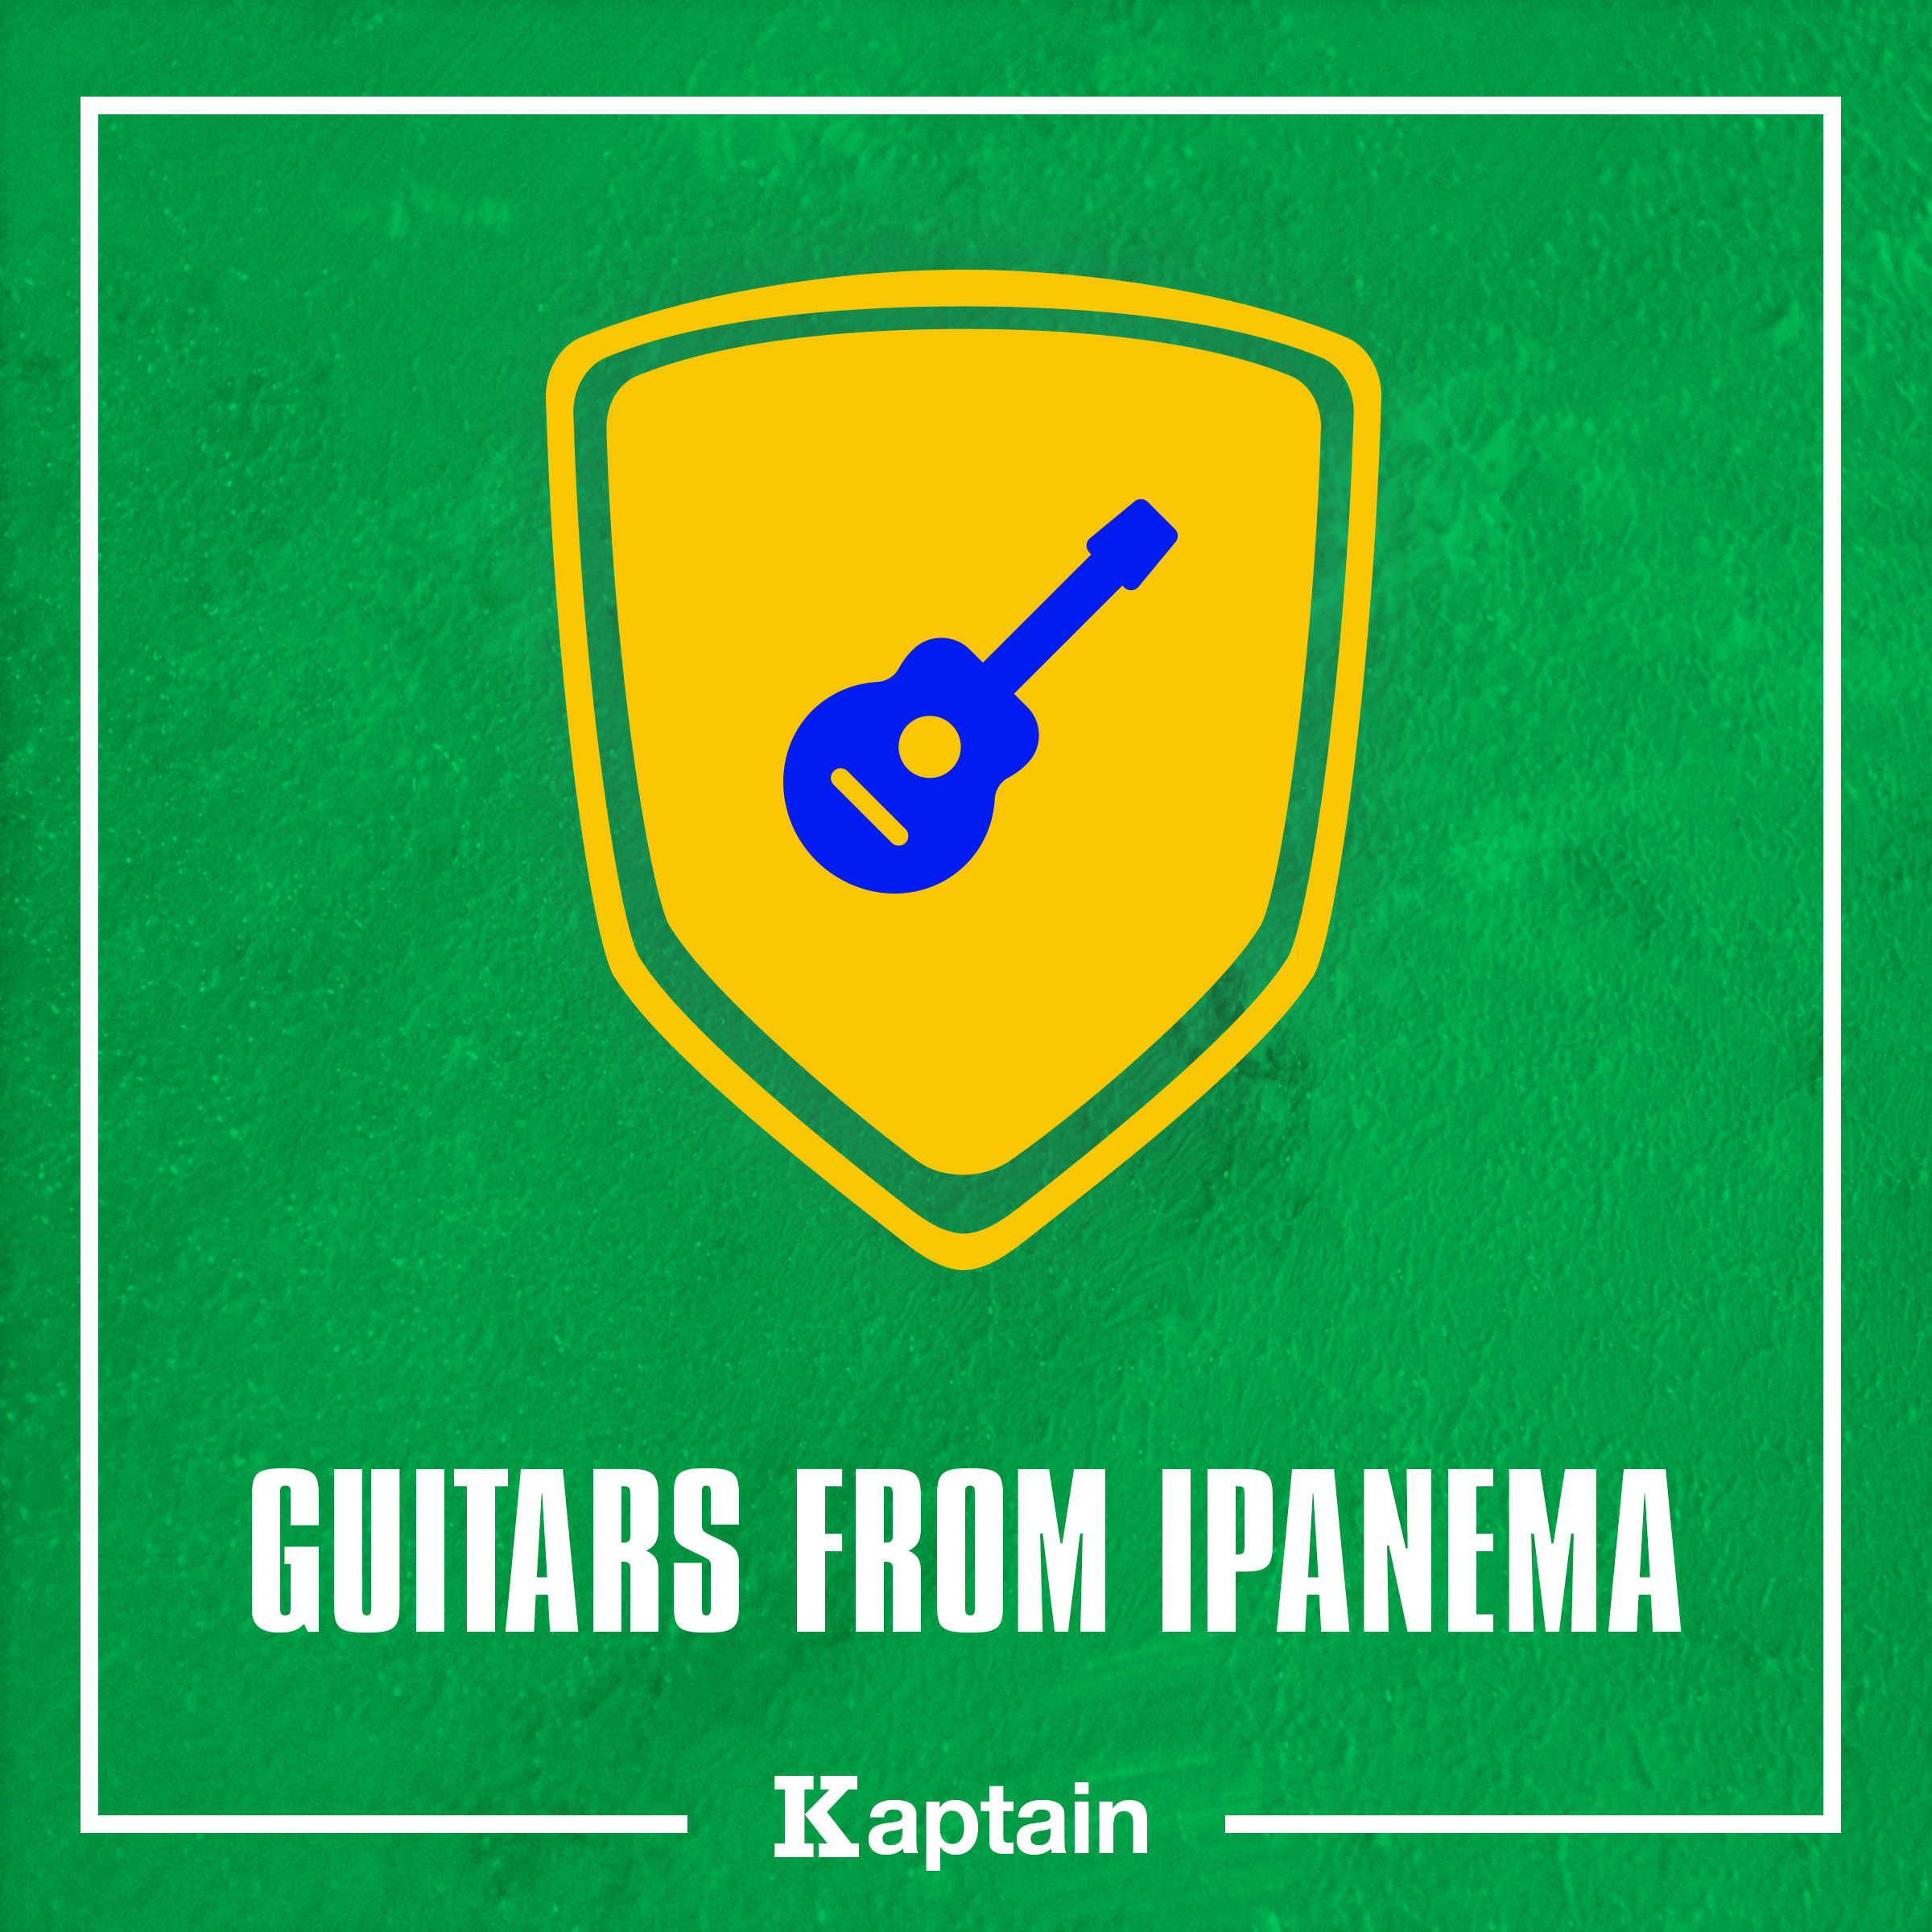 Guitars From Ipanema